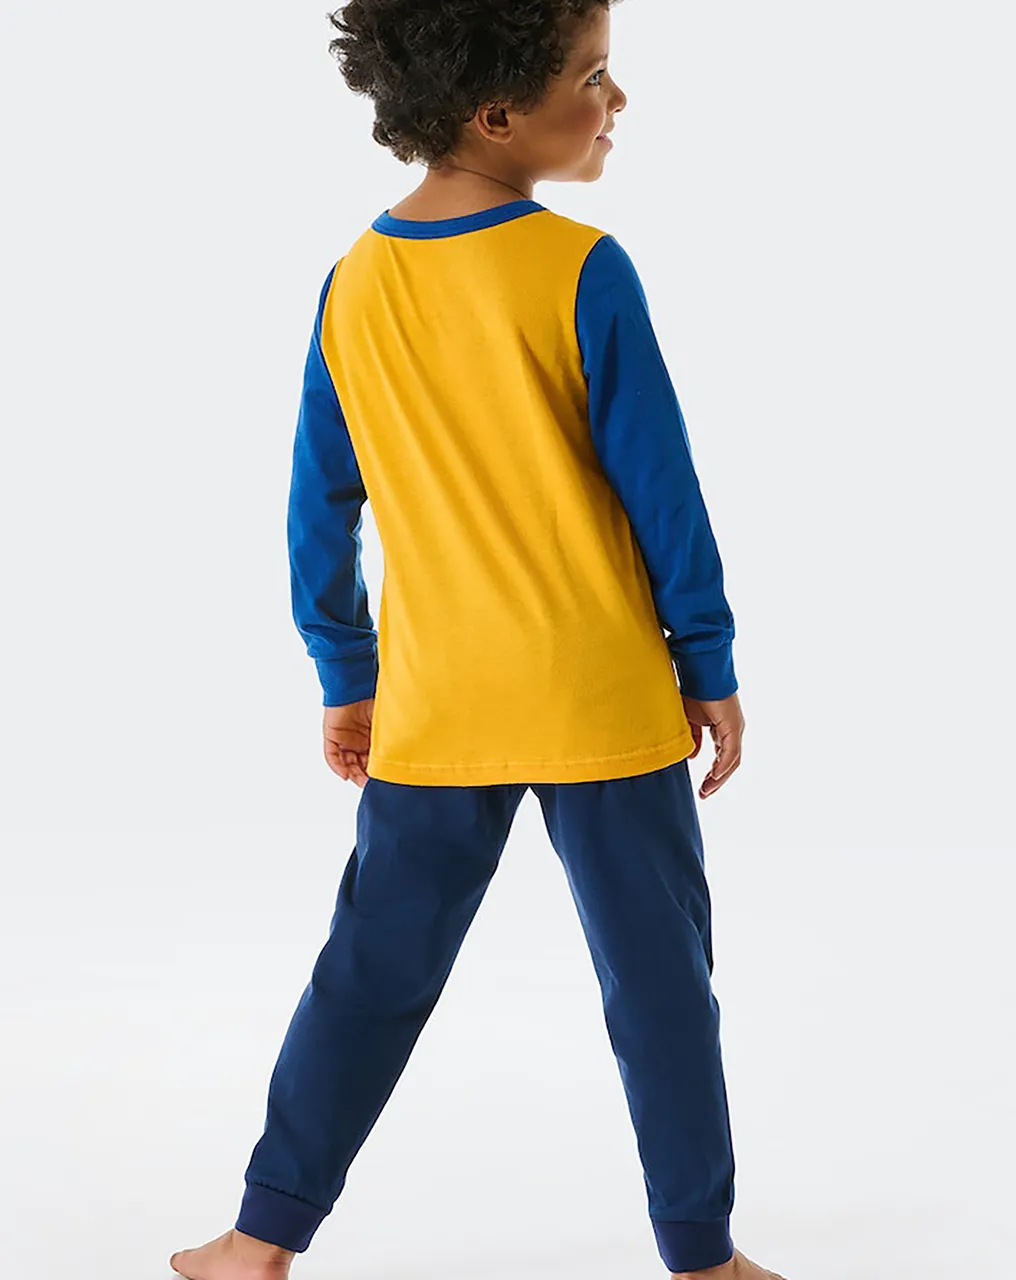 Schlafanzug WIKINGER lang in blau/gelb